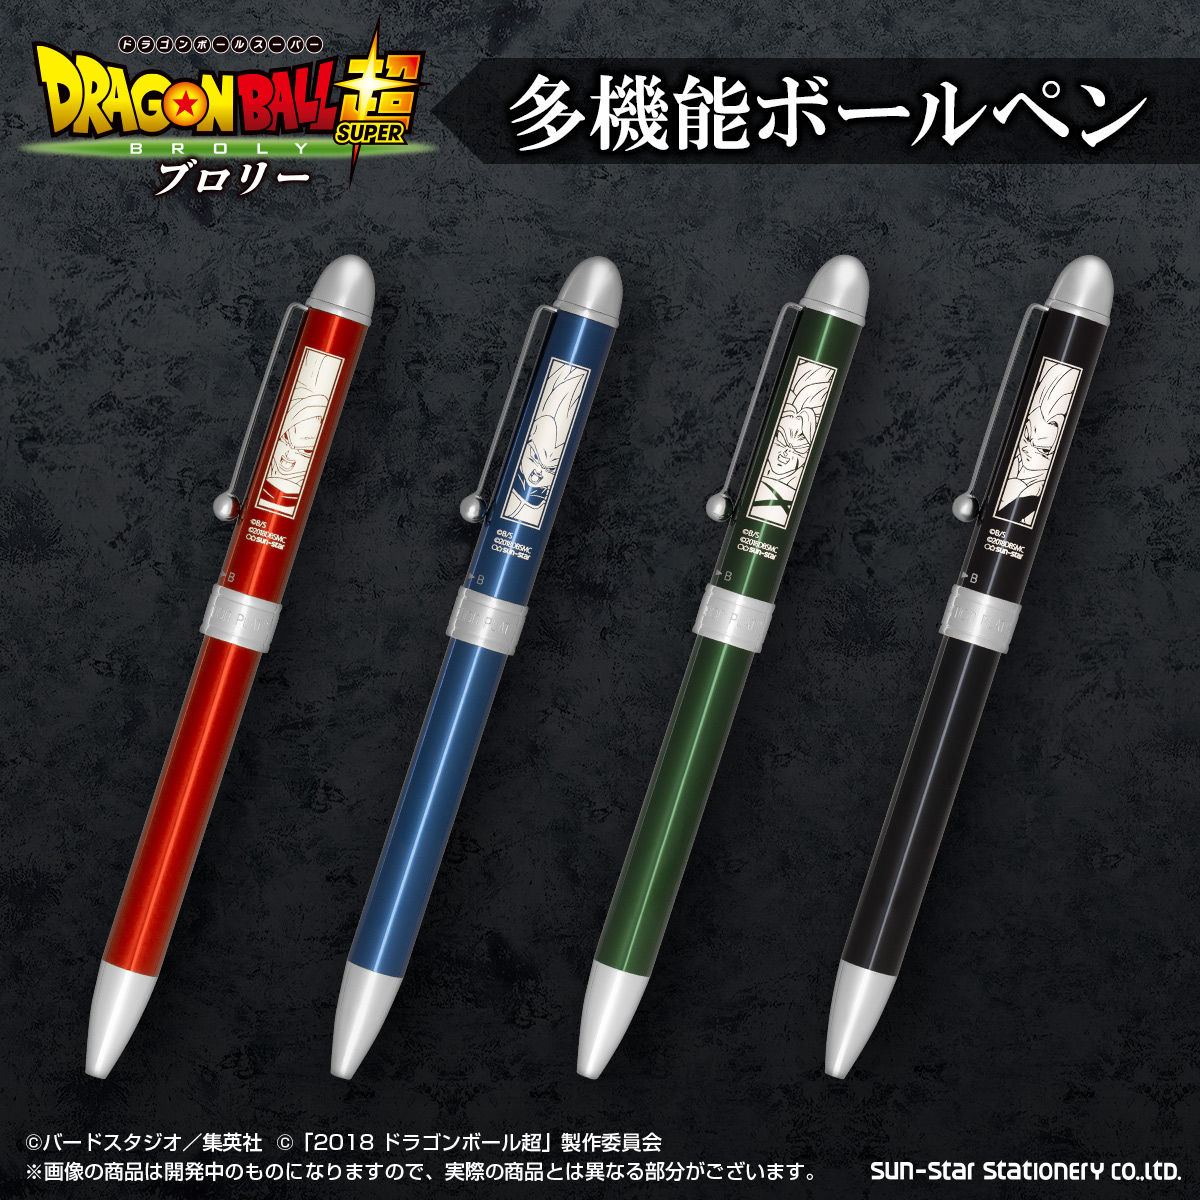 ボールペン画像4種